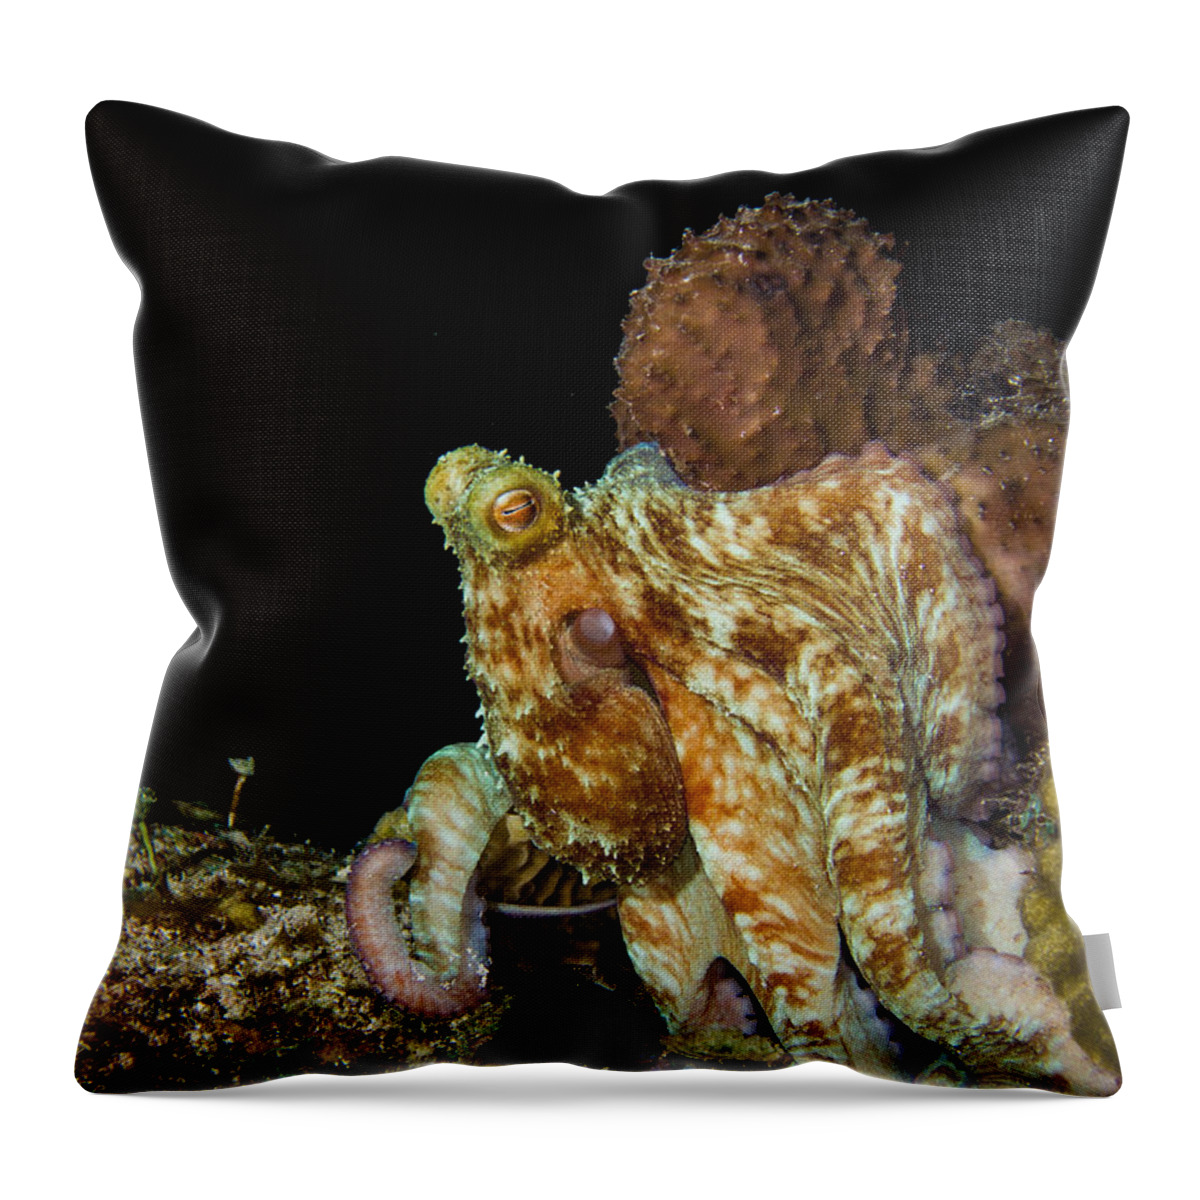 Caribbean Throw Pillow featuring the photograph Caribbean Reef Octopus by Matt Swinden